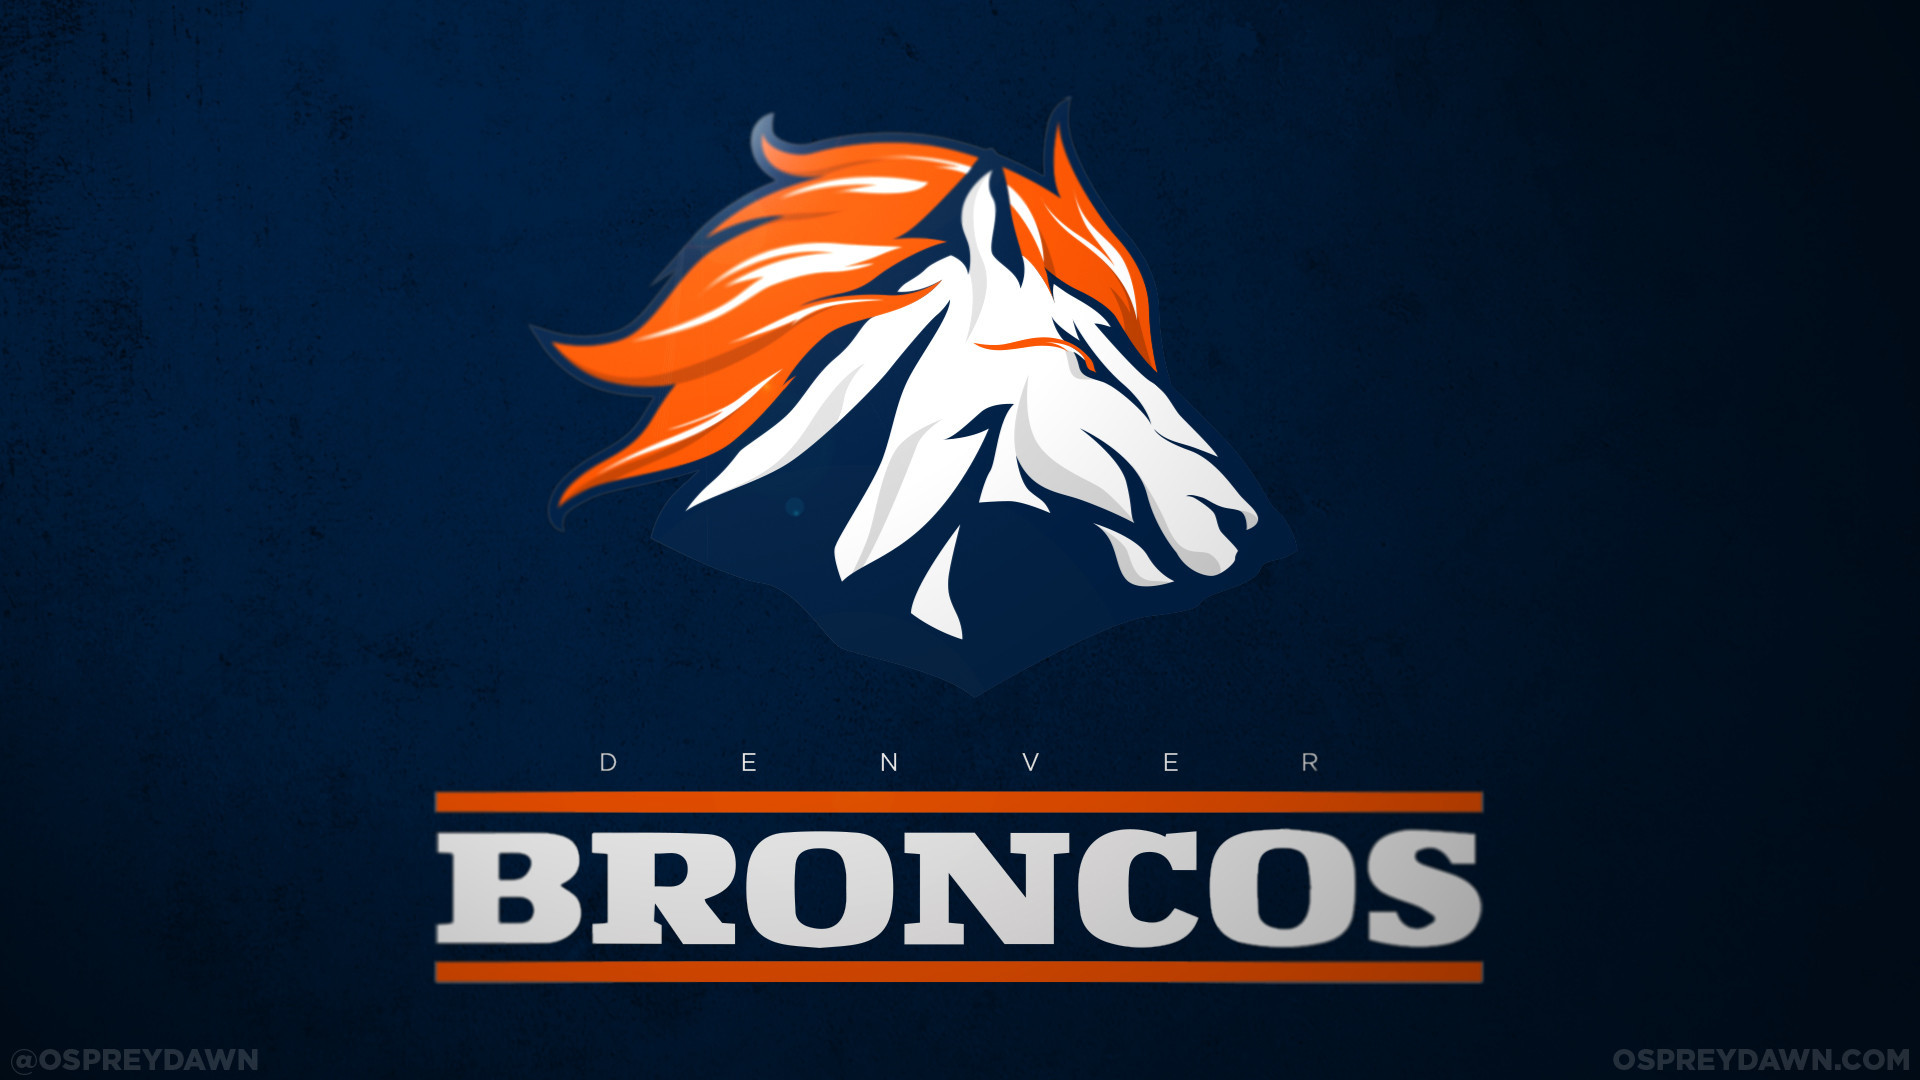 1920x1080 Redesigned Denver Broncos  mountain  logo is amazing | Denver Broncos